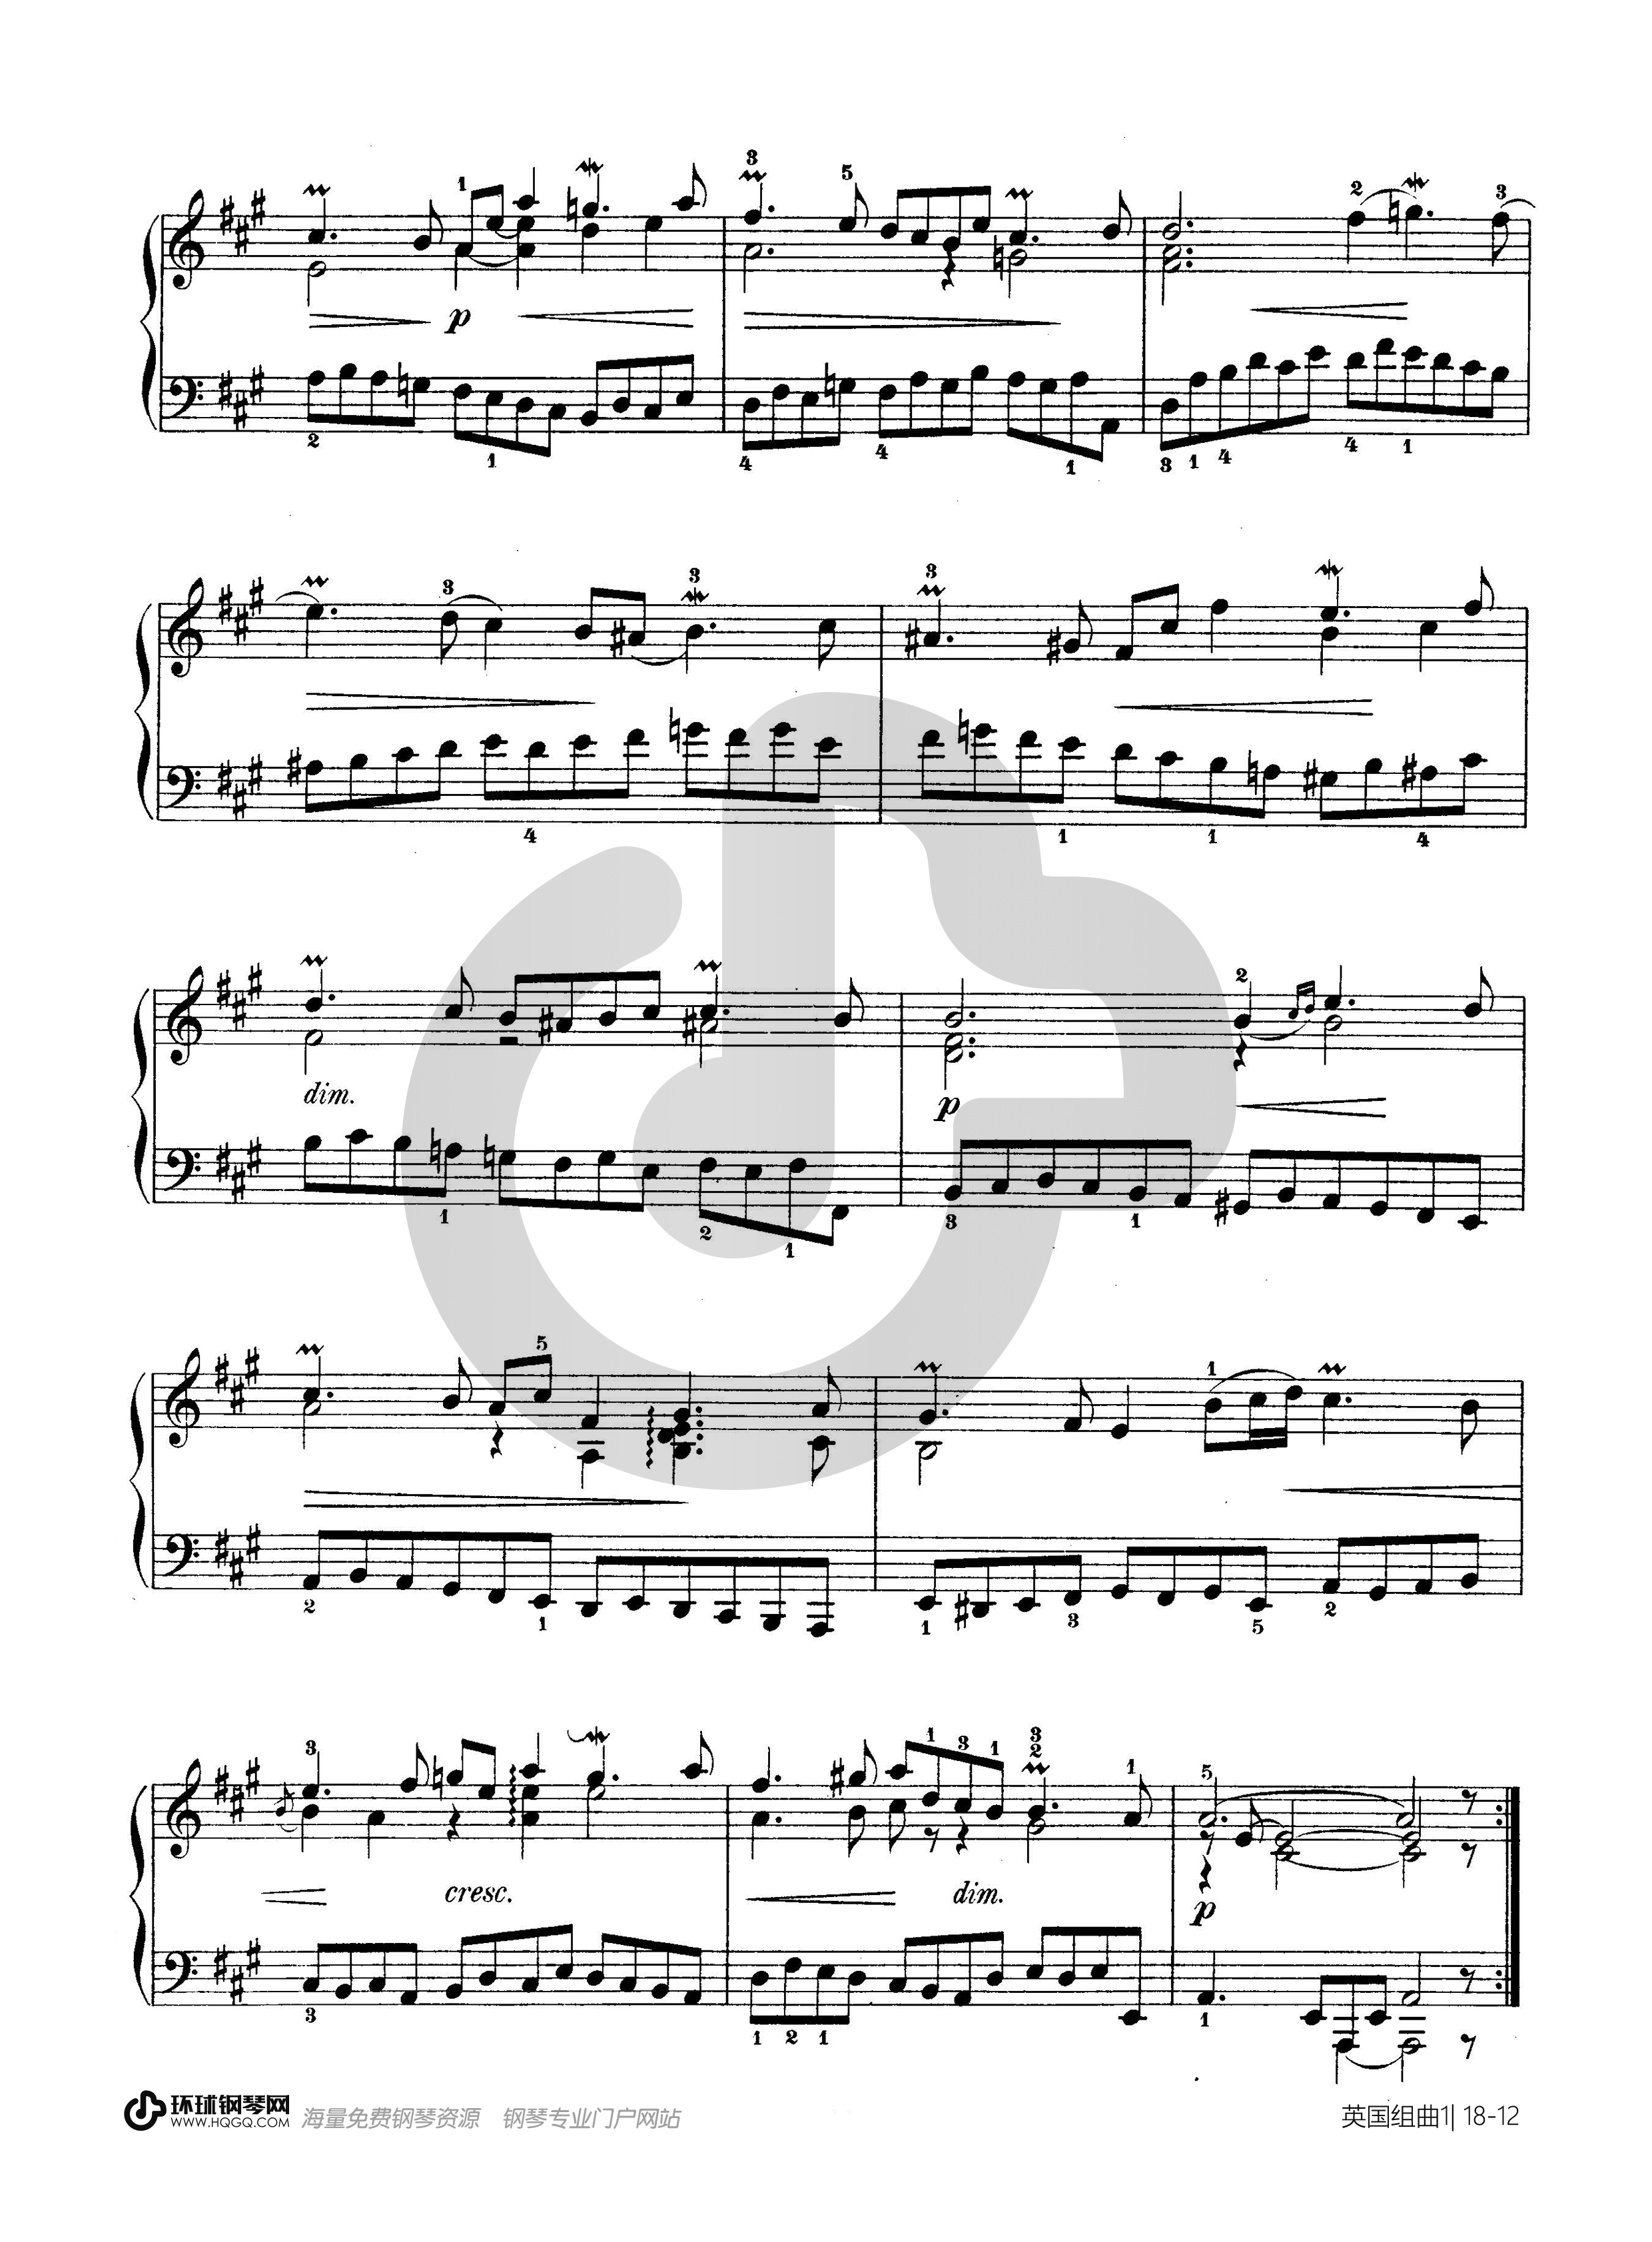 第一首BWV 806（选自《英国组曲》）